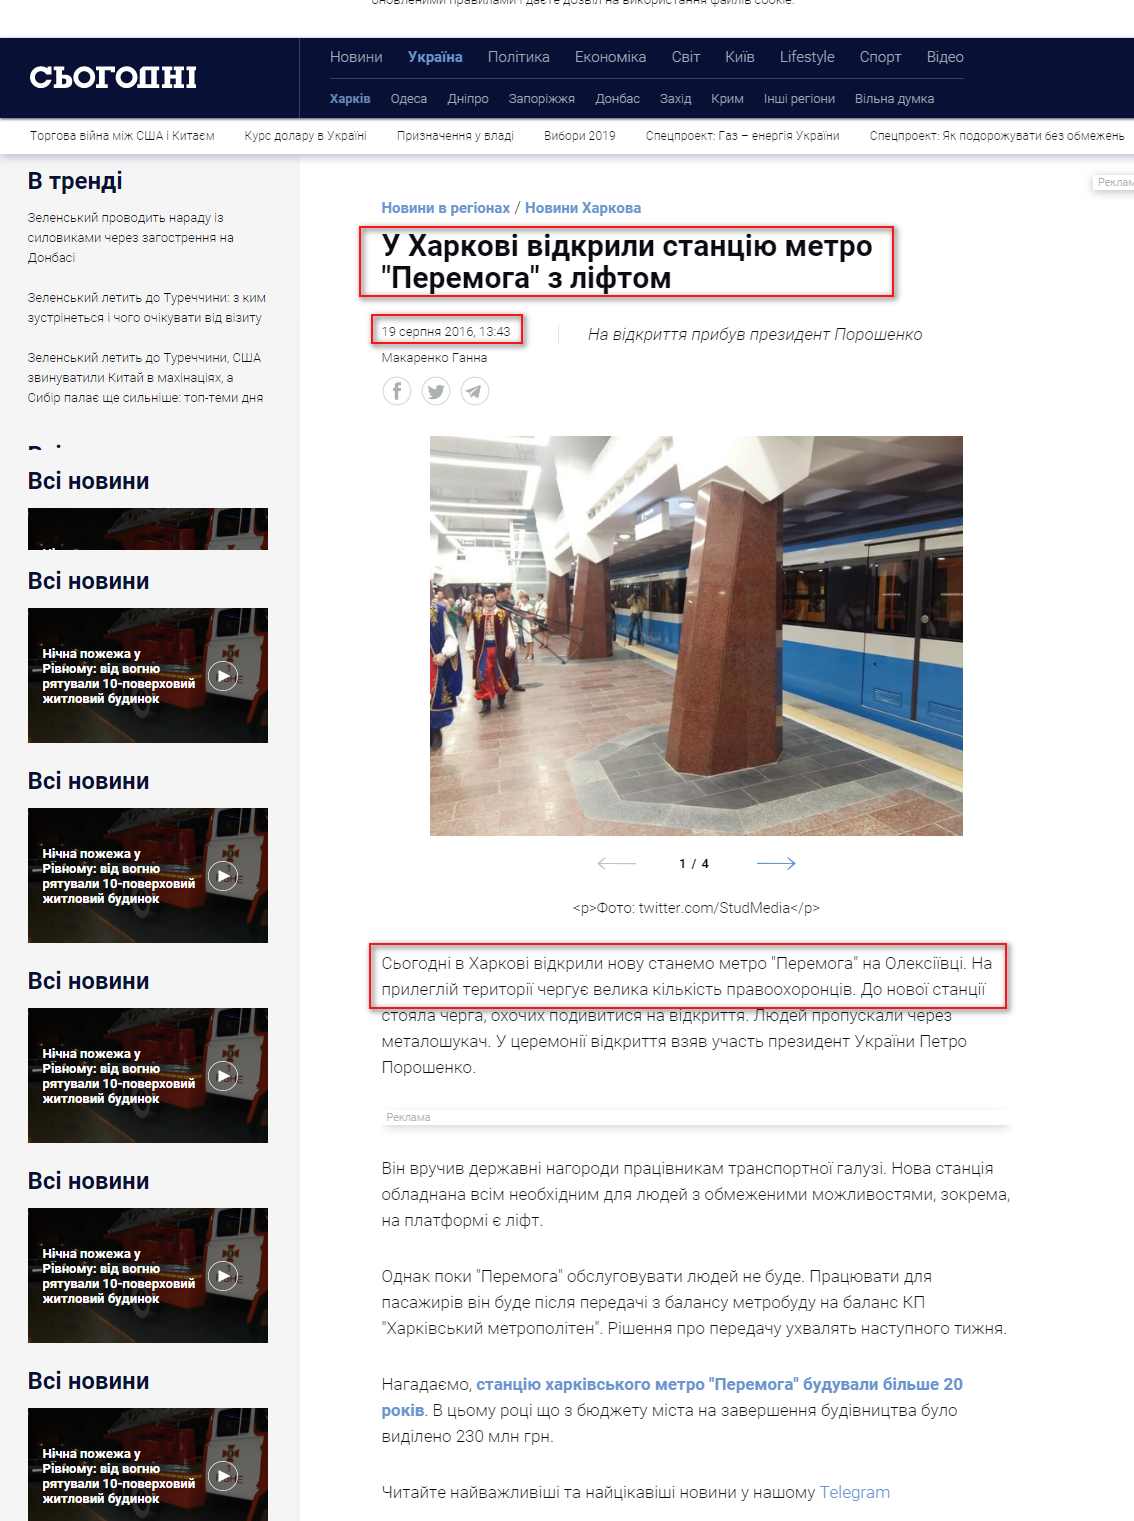 https://ukr.segodnya.ua/regions/kharkov/v-harkove-otkryli-stanciyu-metro-pobeda-s-liftom-744410.html